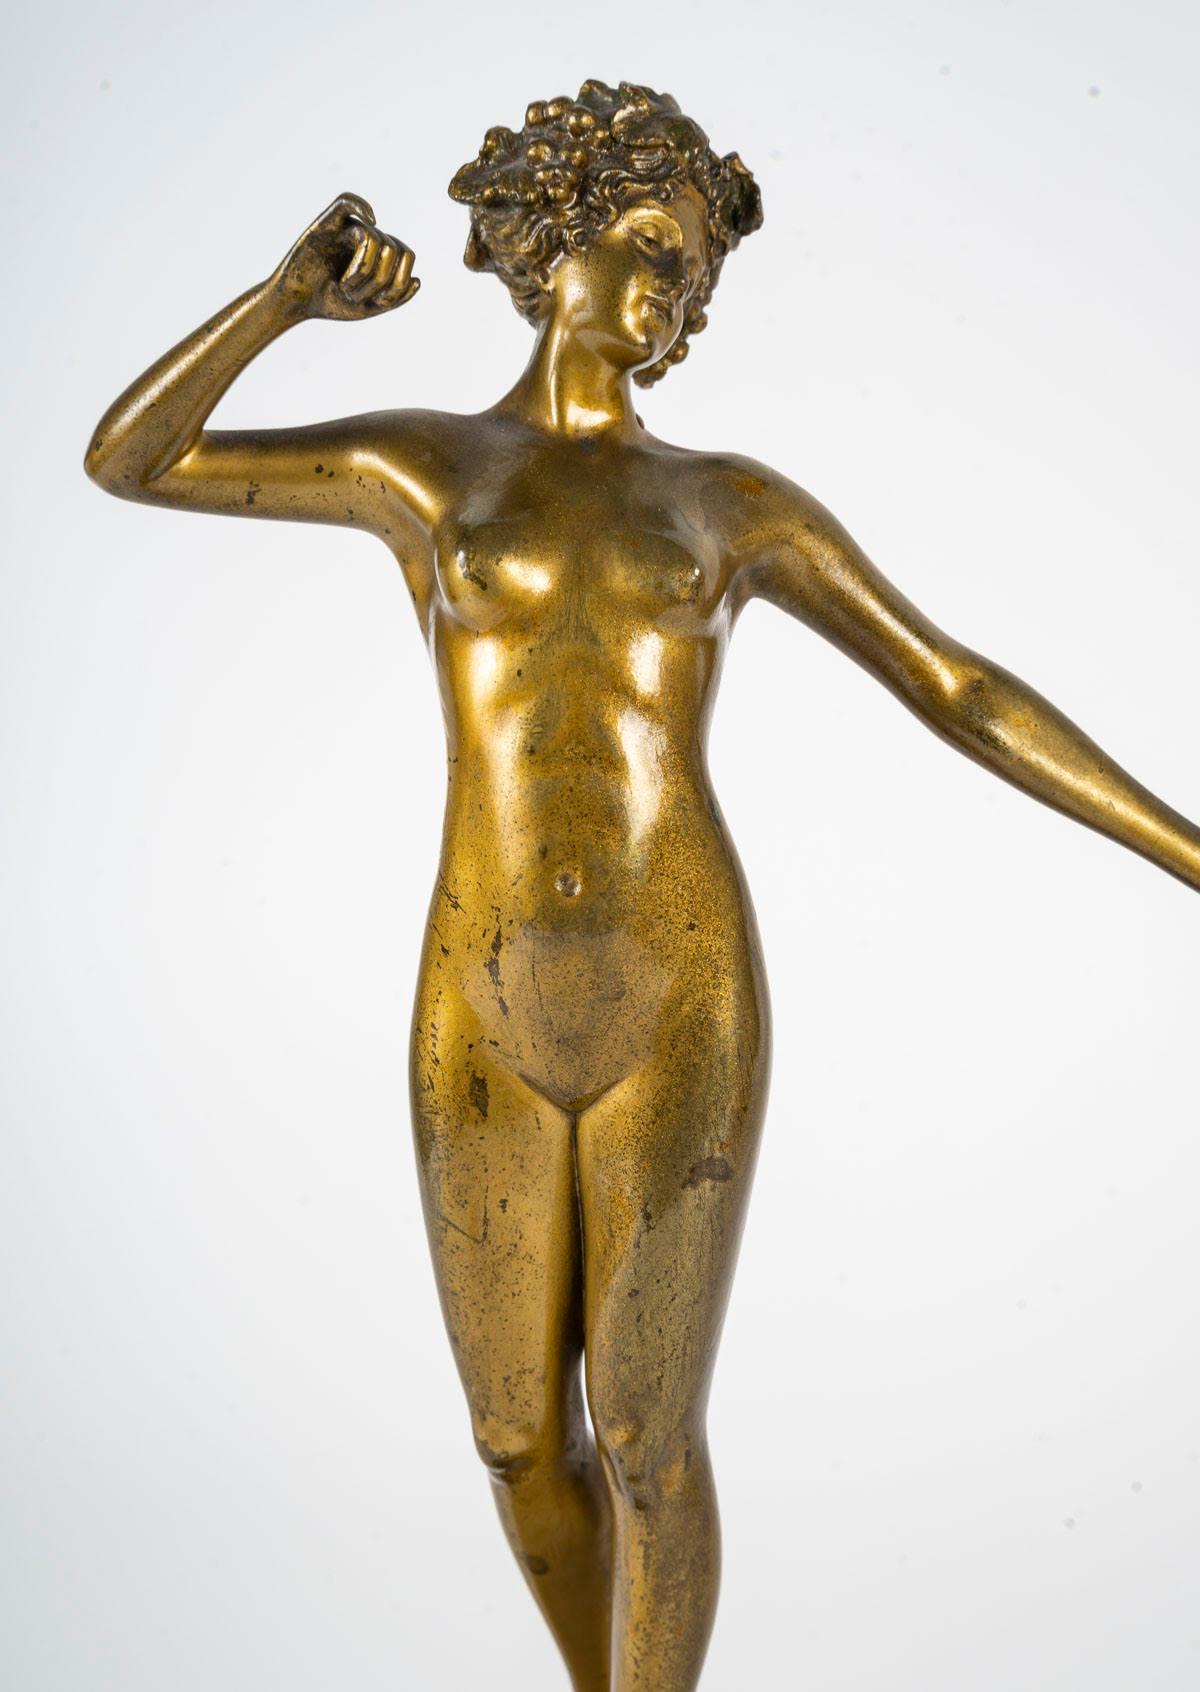 German Bronze Sculpture, Art Deco Period, 1930, Signed Brandel.